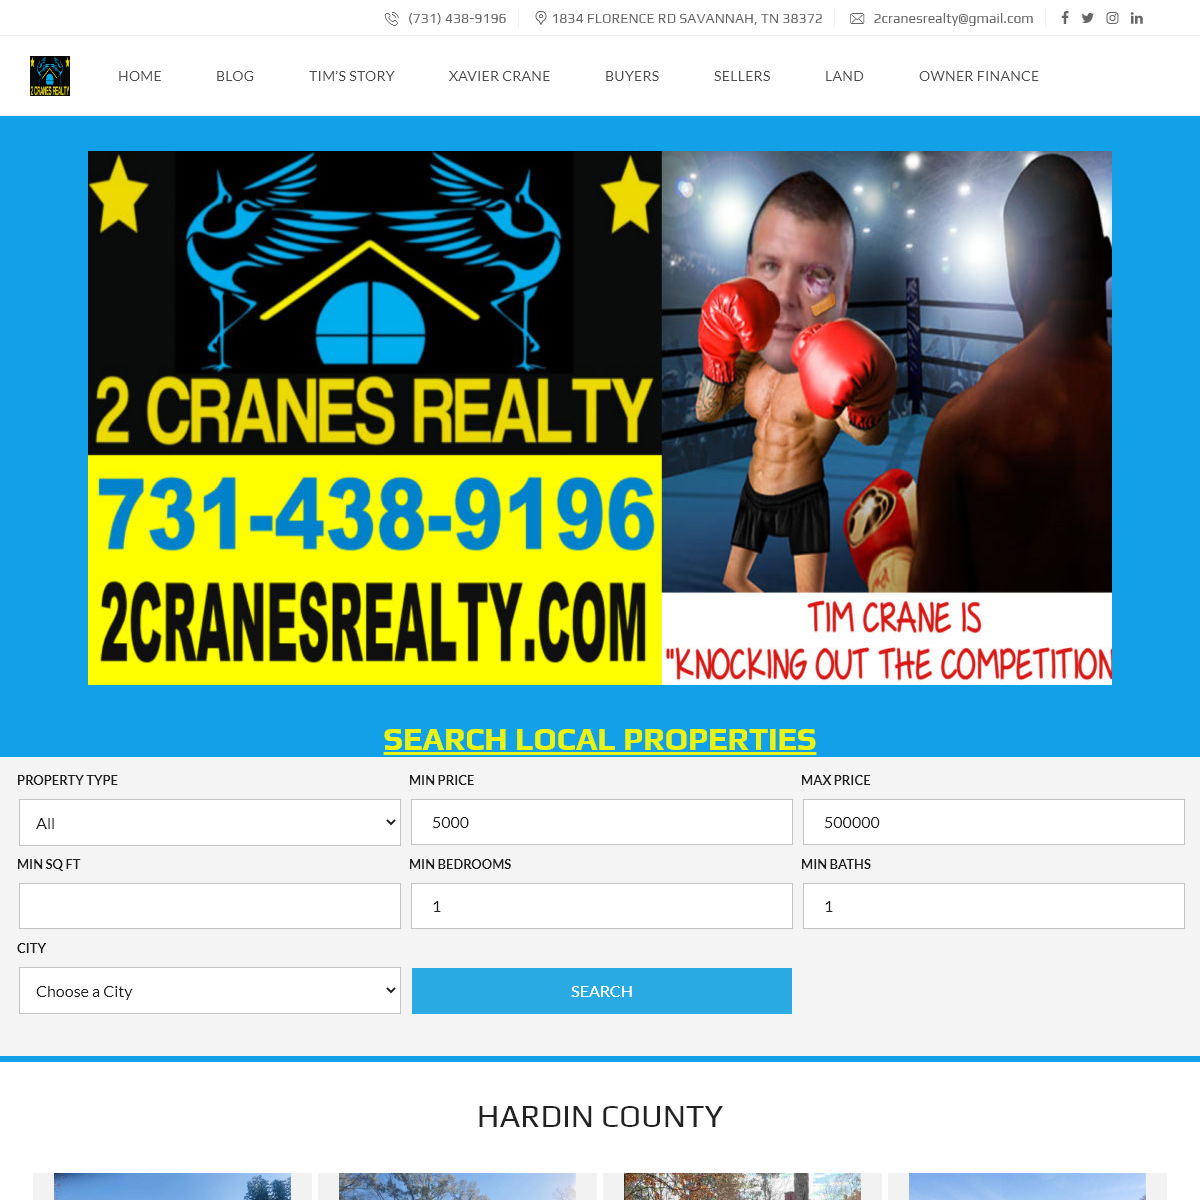 A complete backup of 2cranesrealty.com